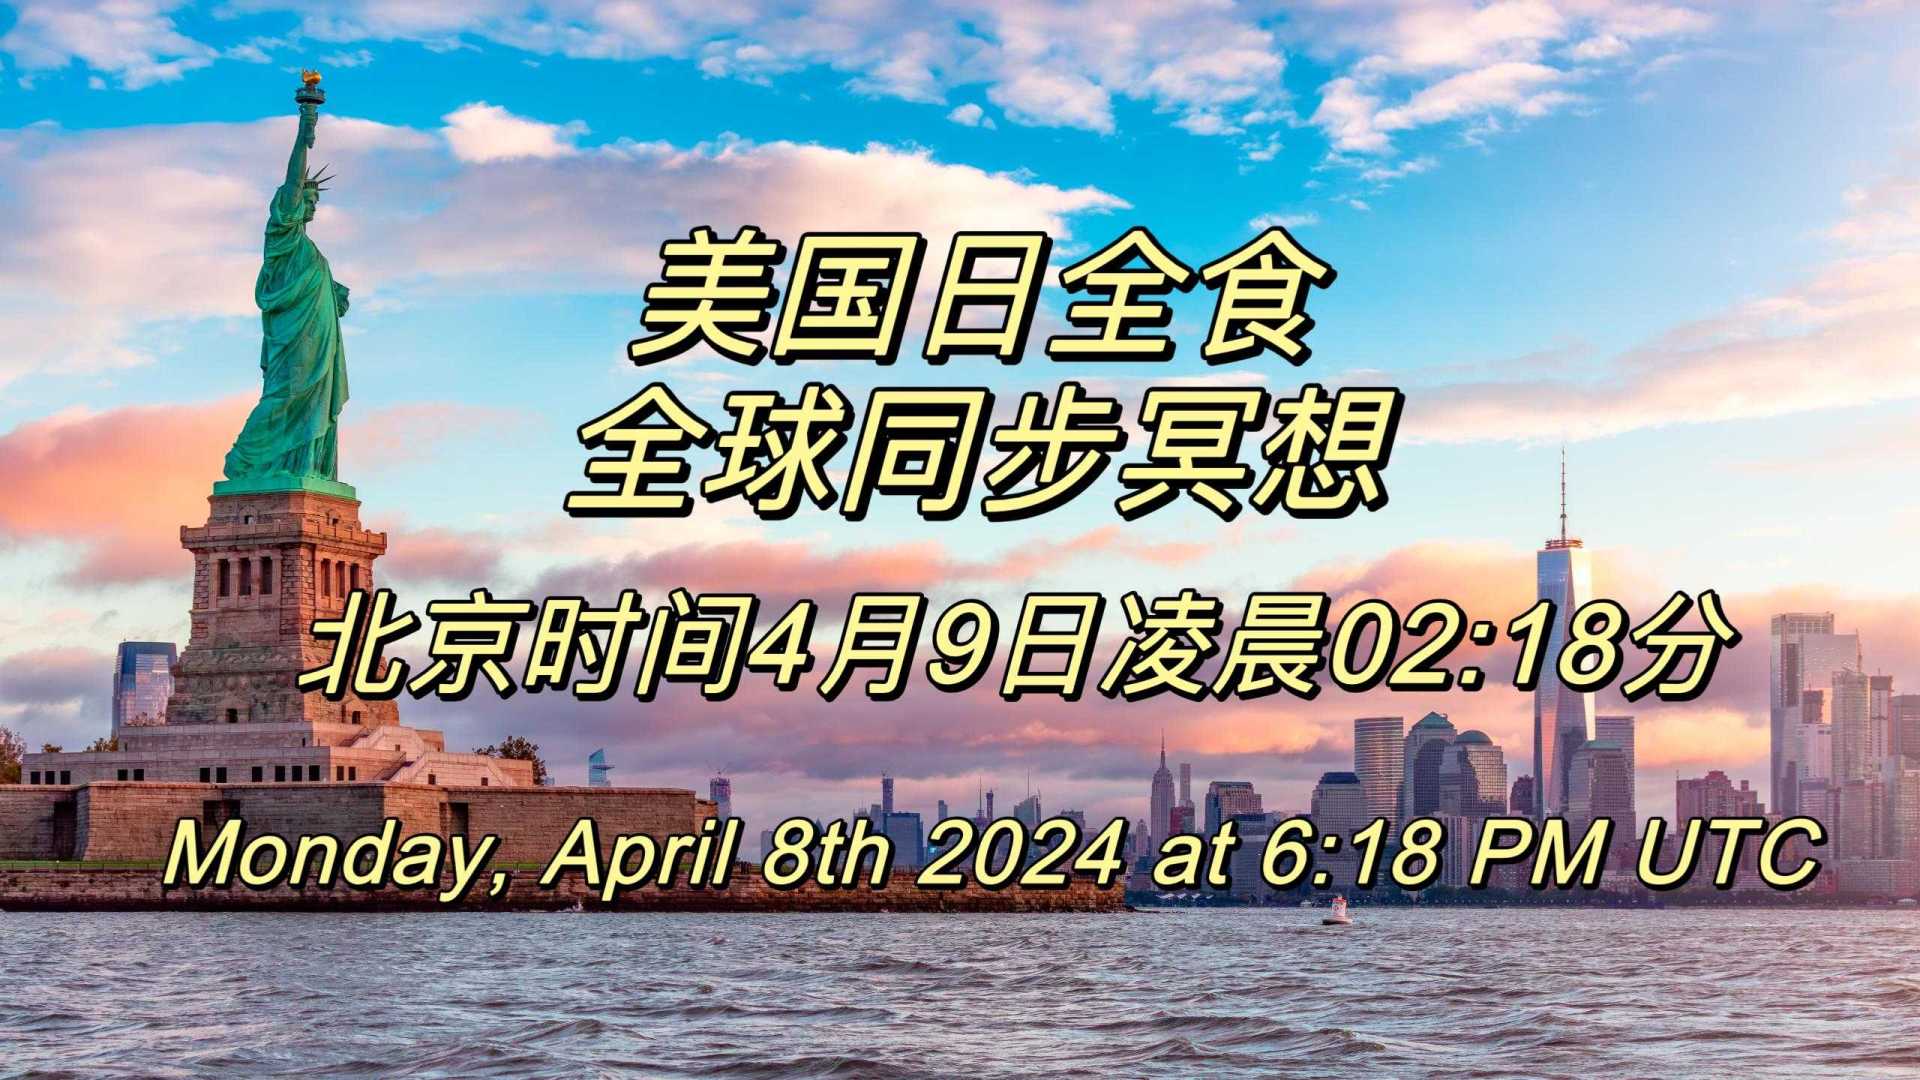 北京时间4月9日凌晨02:18分美国日全食全球同步冥想